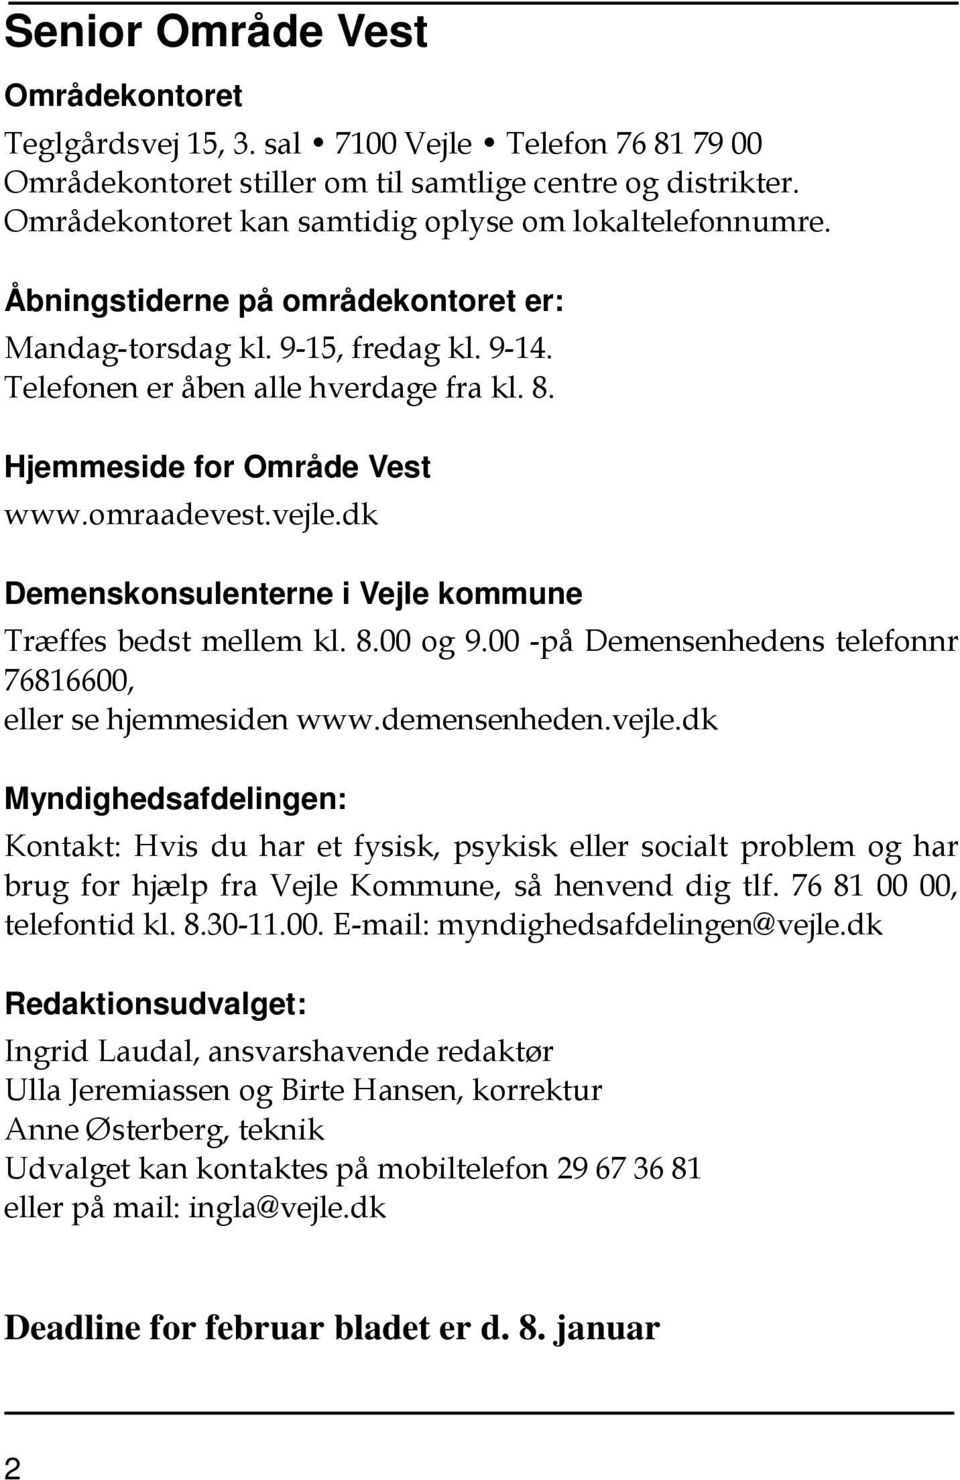 Hjemmeside for Område Vest www.omraadevest.vejle.dk Demenskonsulenterne i Vejle kommune Træffes bedst mellem kl. 8.00 og 9.00 -på Demensenhedens telefonnr 76816600, eller se hjemmesiden www.